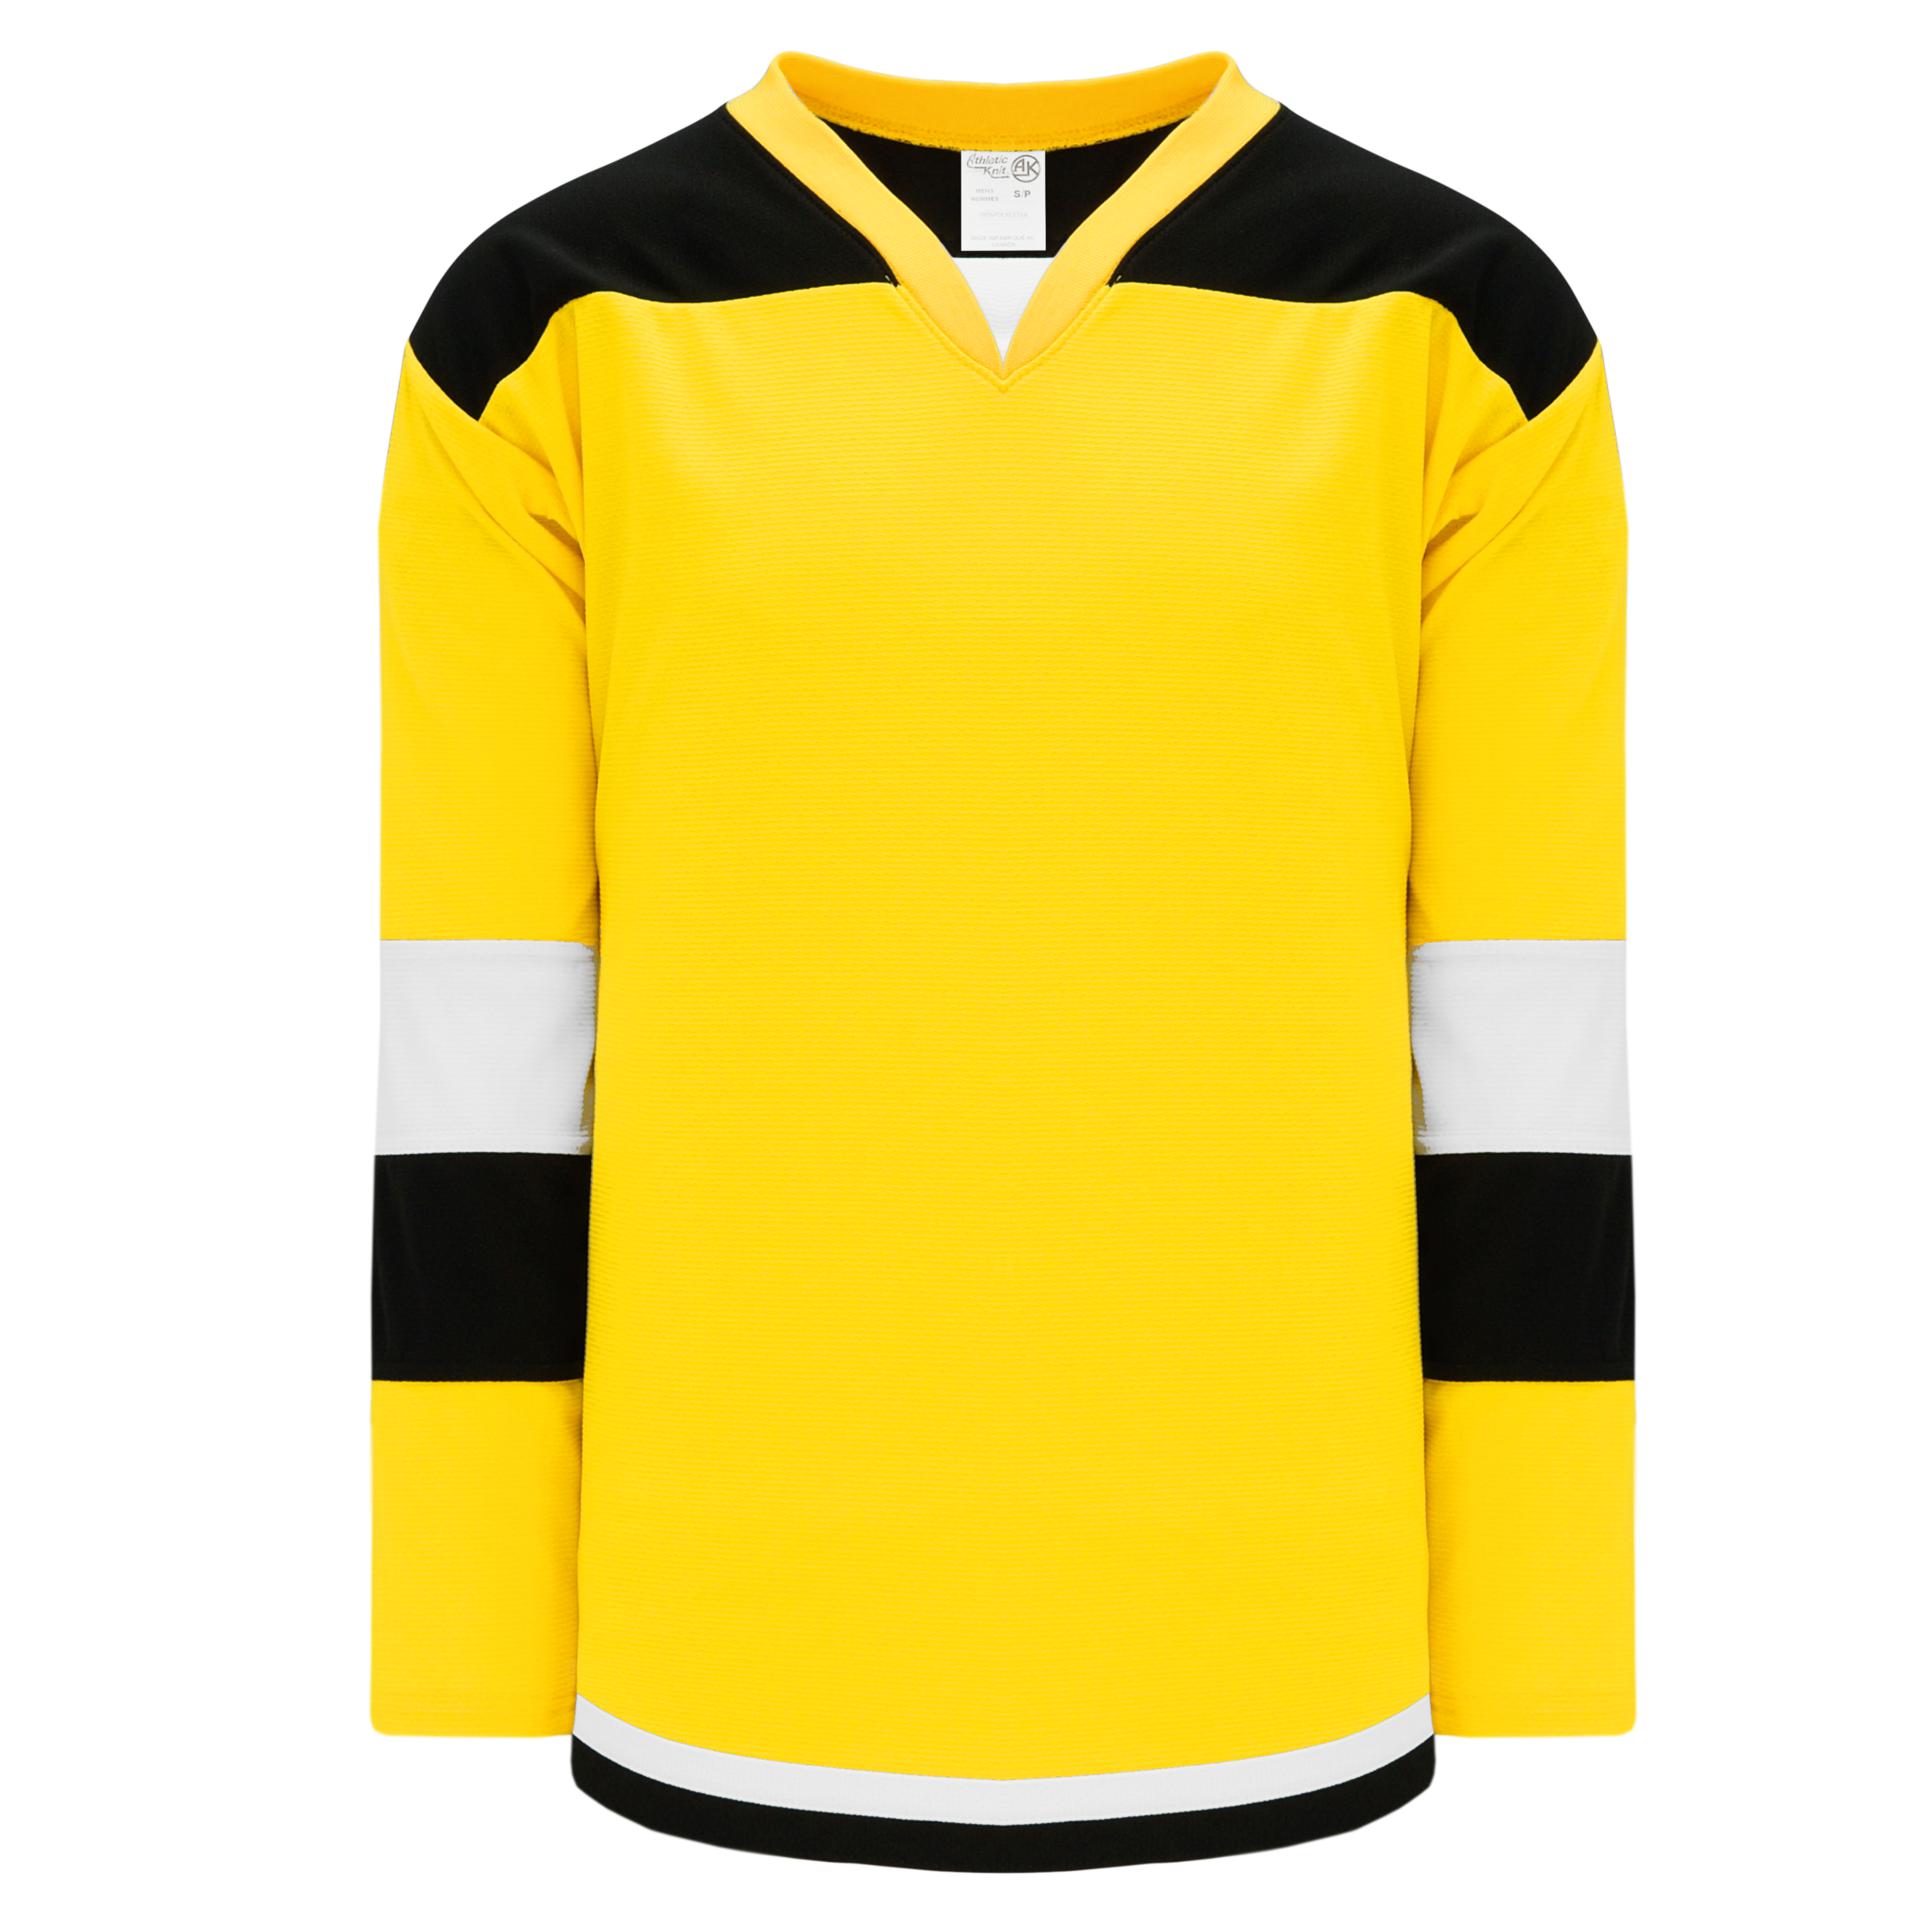 Game Smile Hockey Jersey Shirt (Black)